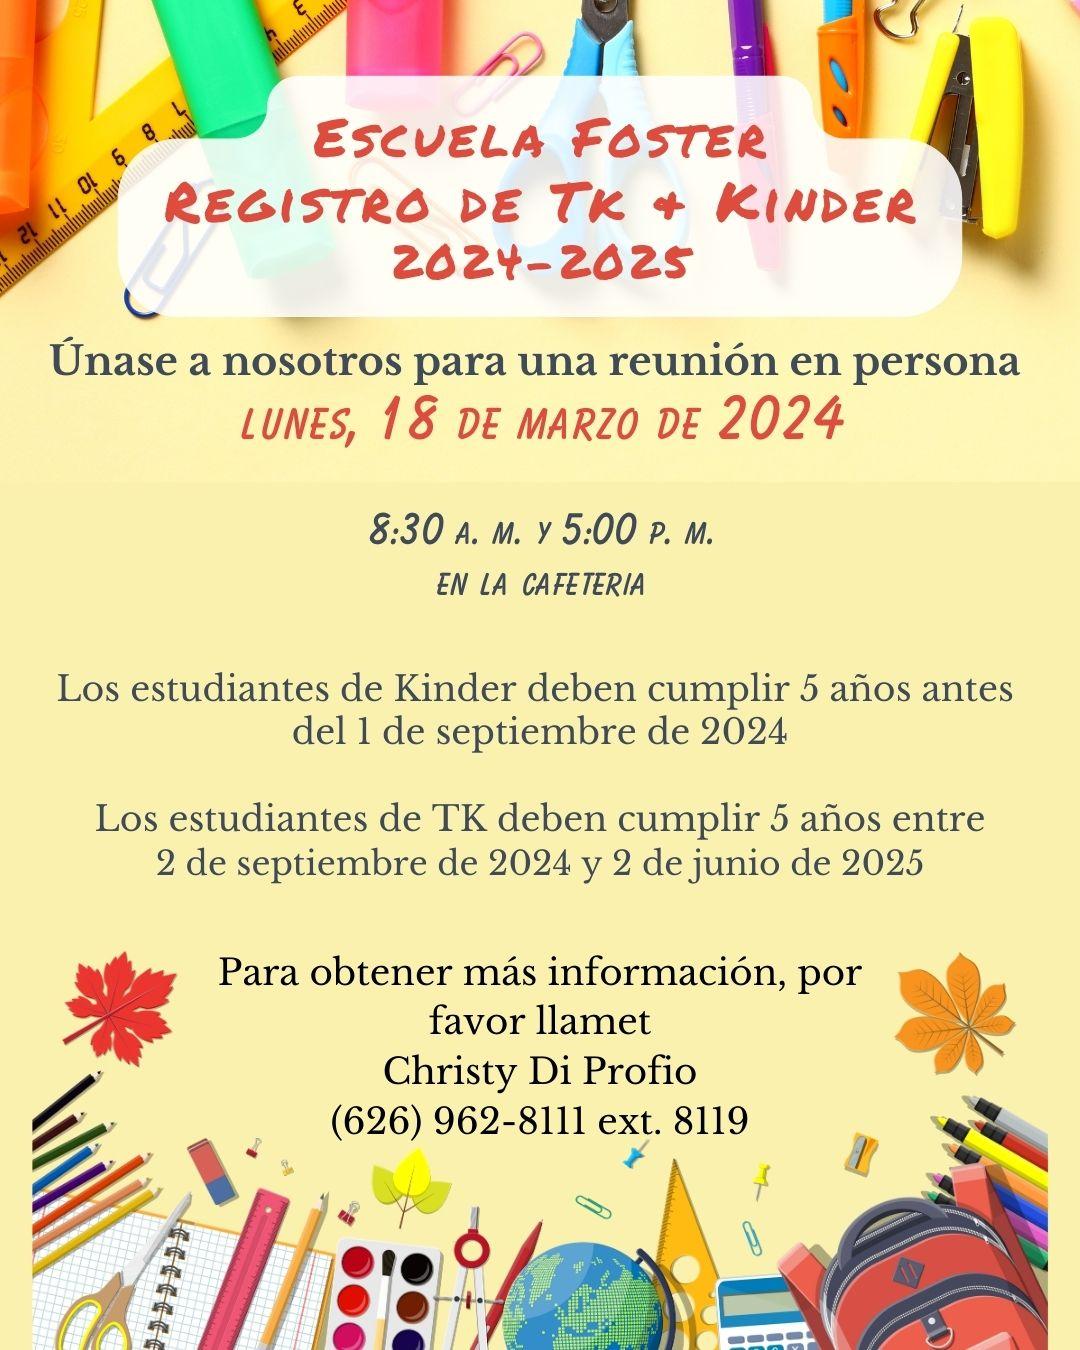 TK / Kinder Registration - Spanish